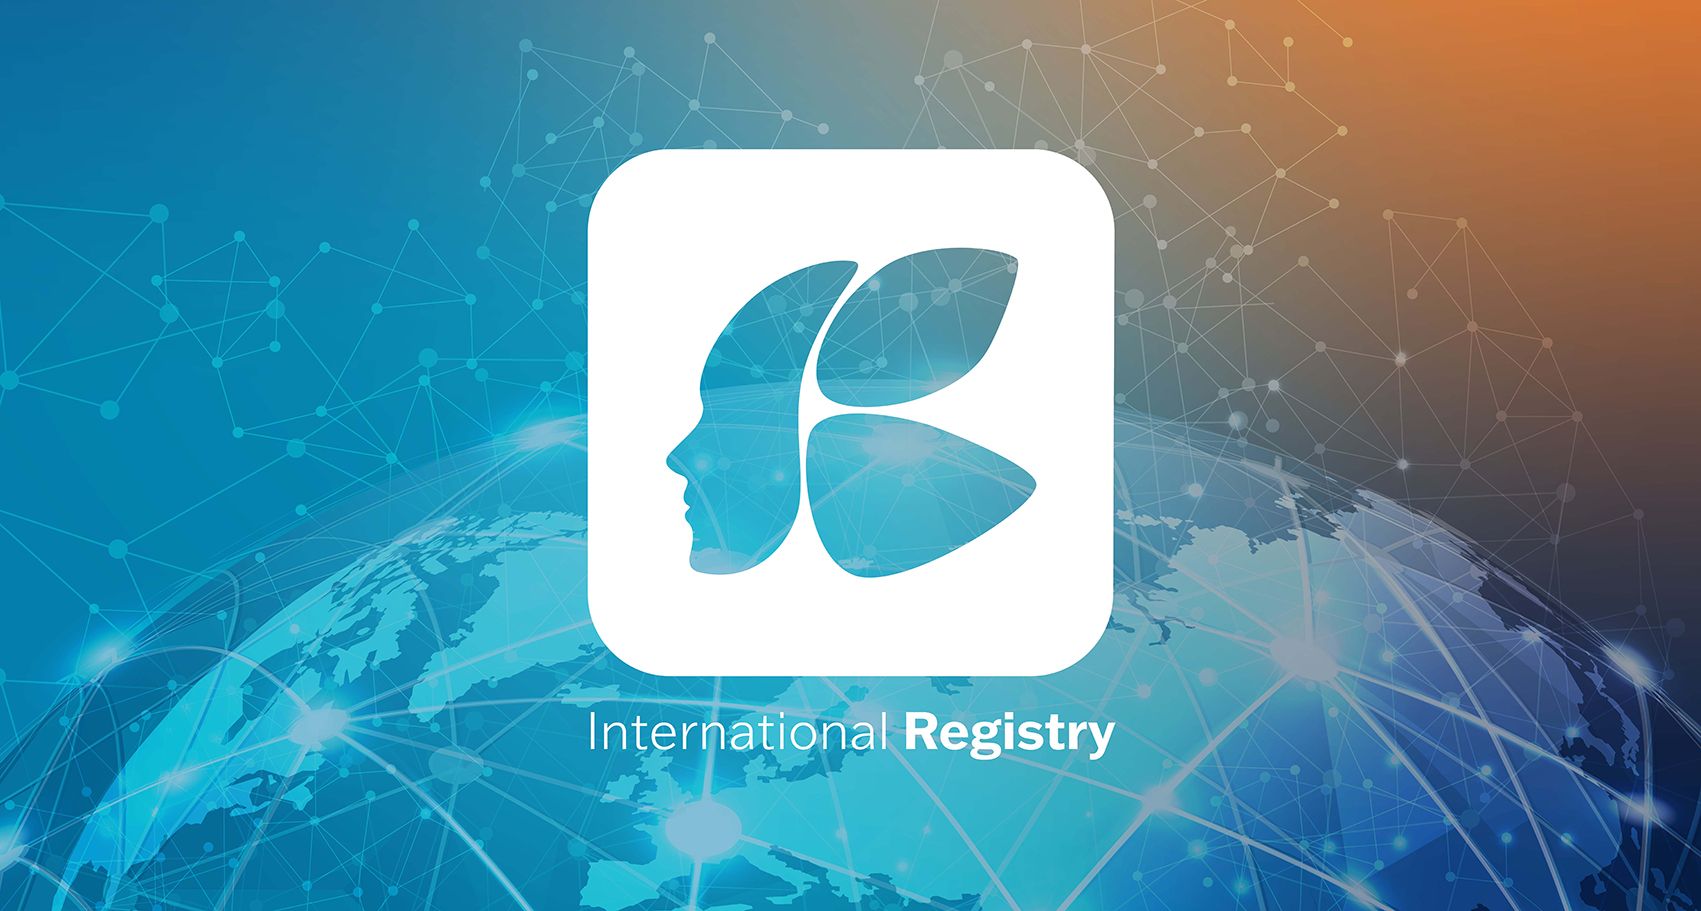 International Registry